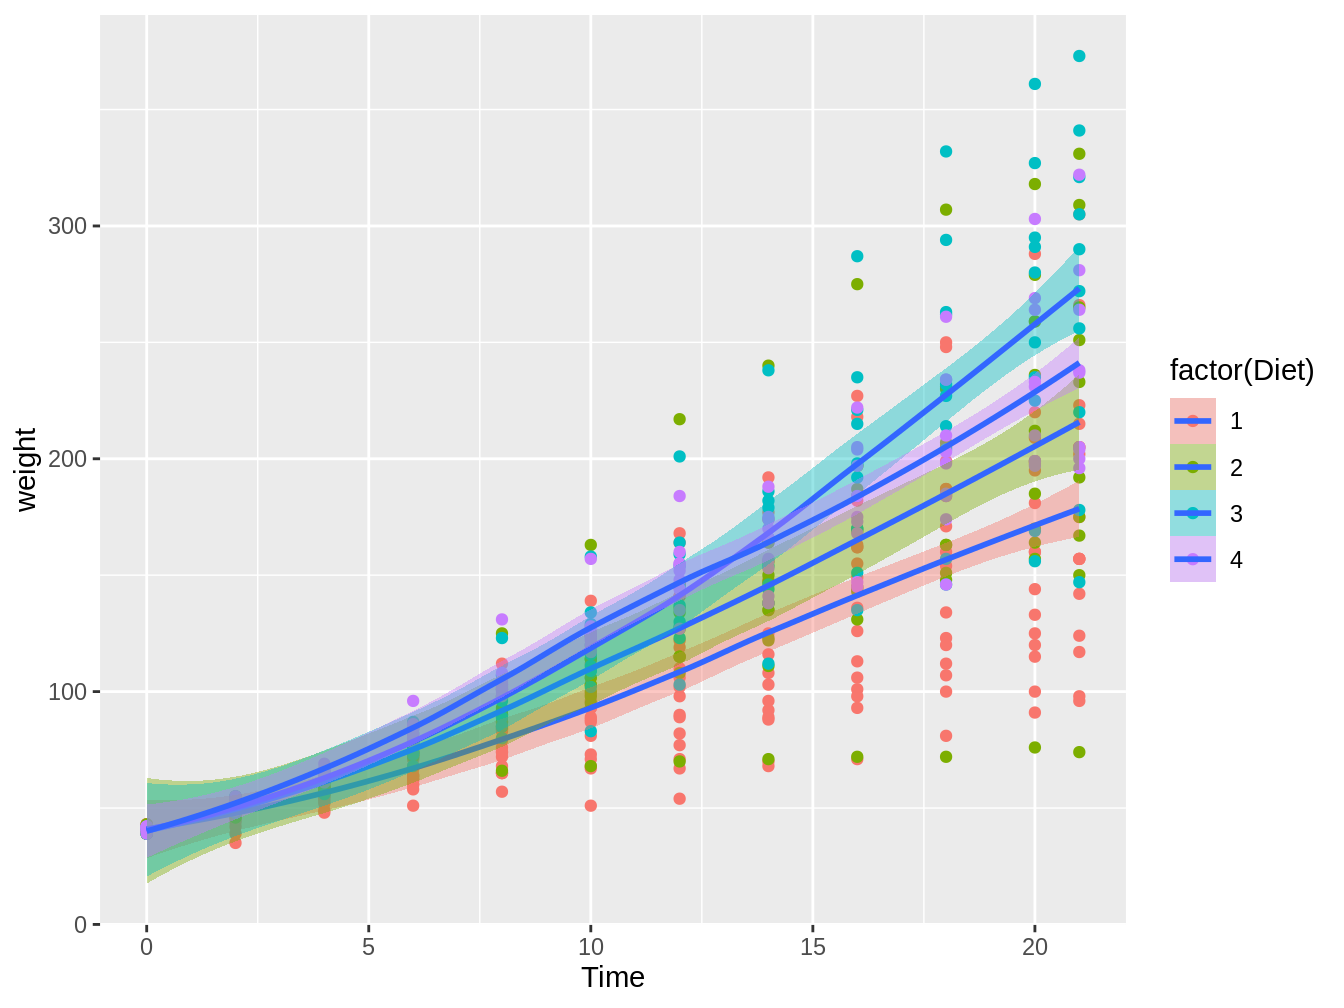 Gráfico en el cual vemos el peso de pollos en el tiempo, con colores distintos según el tipo de dieta, con líneas de tendencia e intervalos de confianza basados en el método loess